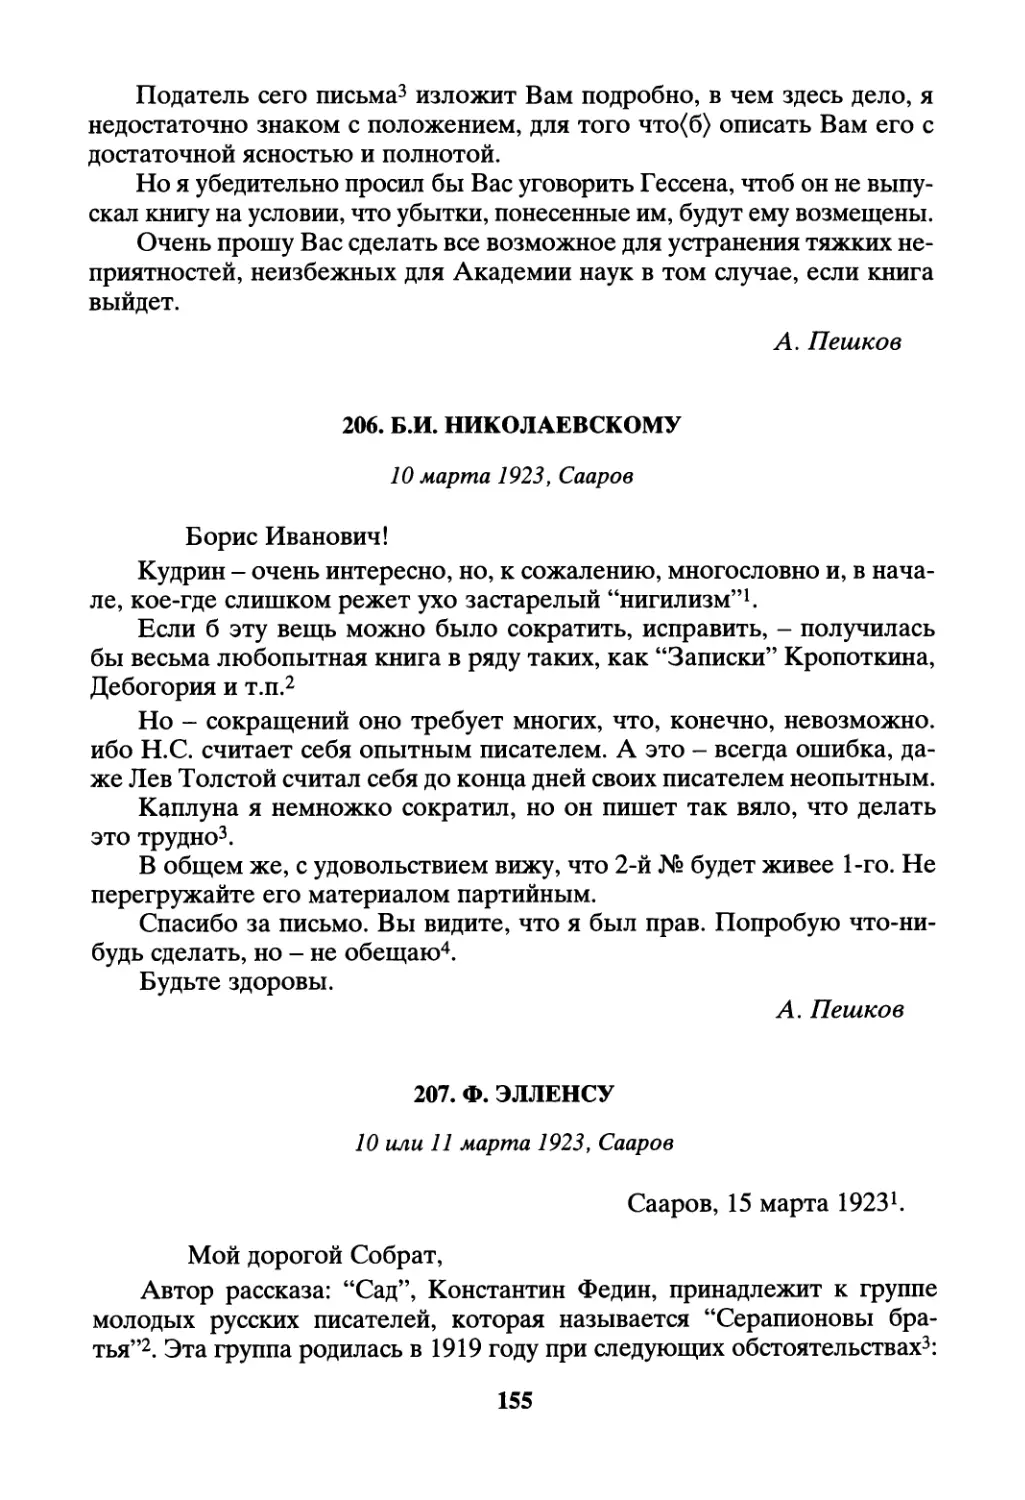 206. Б.И. Николаевскому - 10 марта
207. Ф. Элленсу - 10 или 11 марта